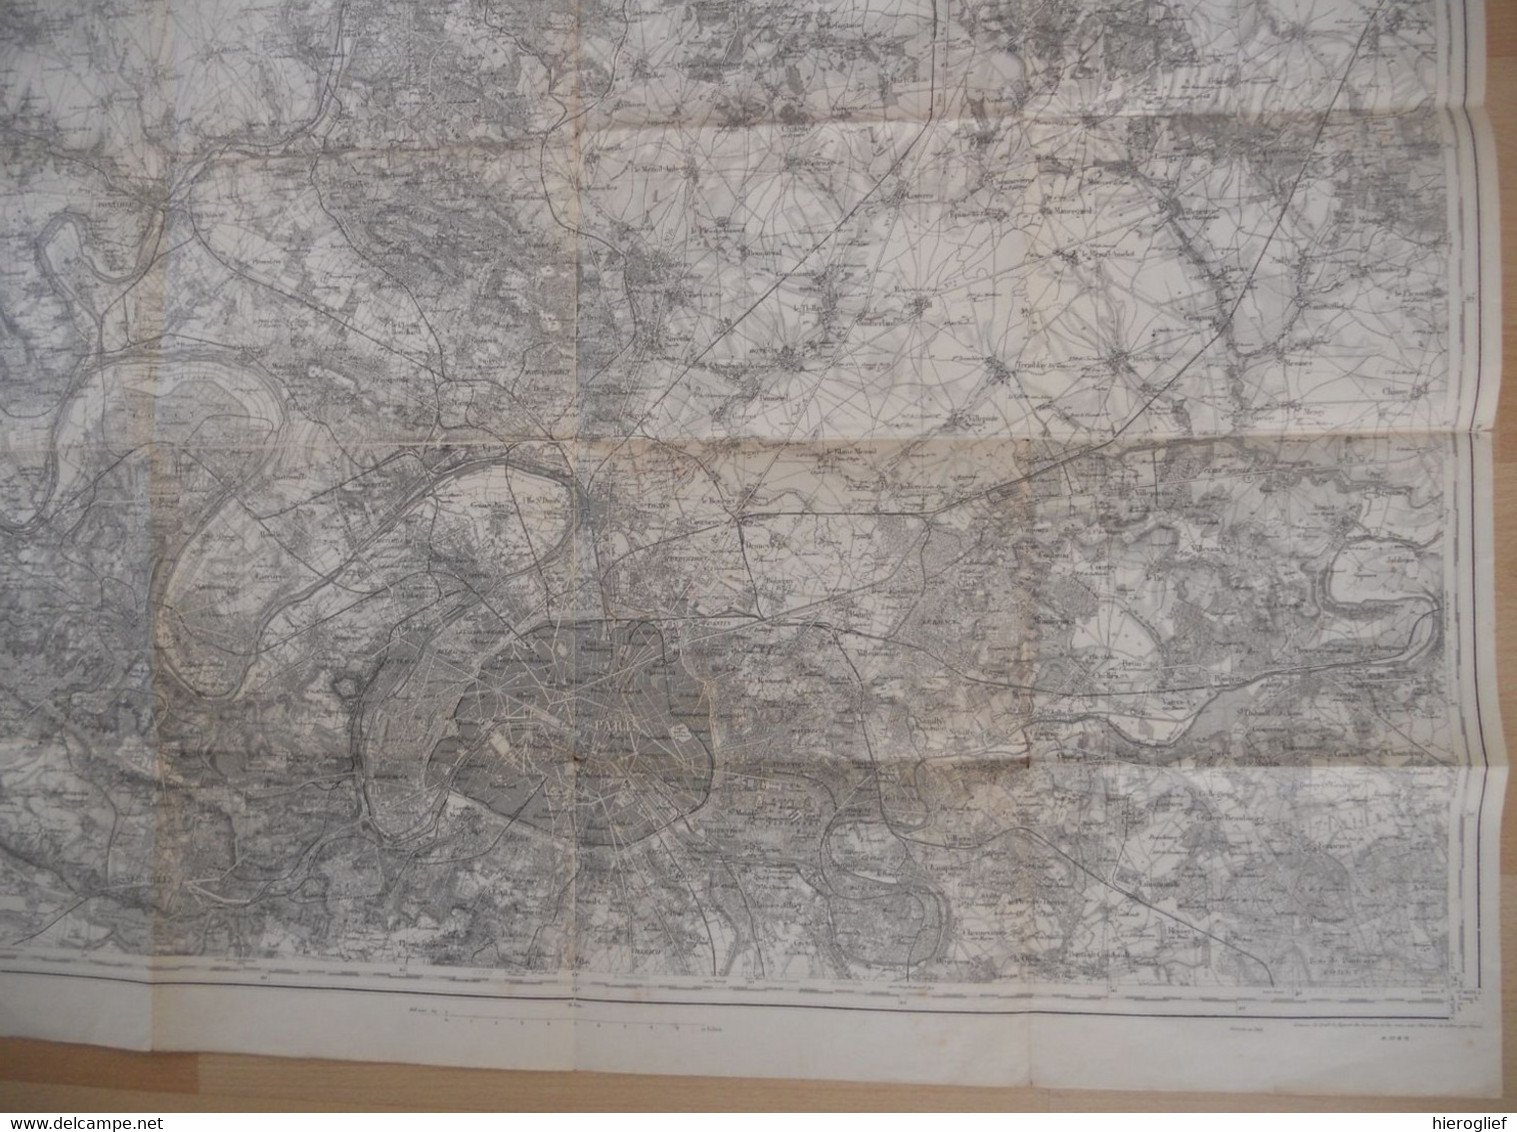 Carte De PARIS (48) Levée Par L'officive Du Corps D'état Major Et Publiée Par Le Dépôt Dl Guerre En 1832 Révisée 1901 - Topographical Maps